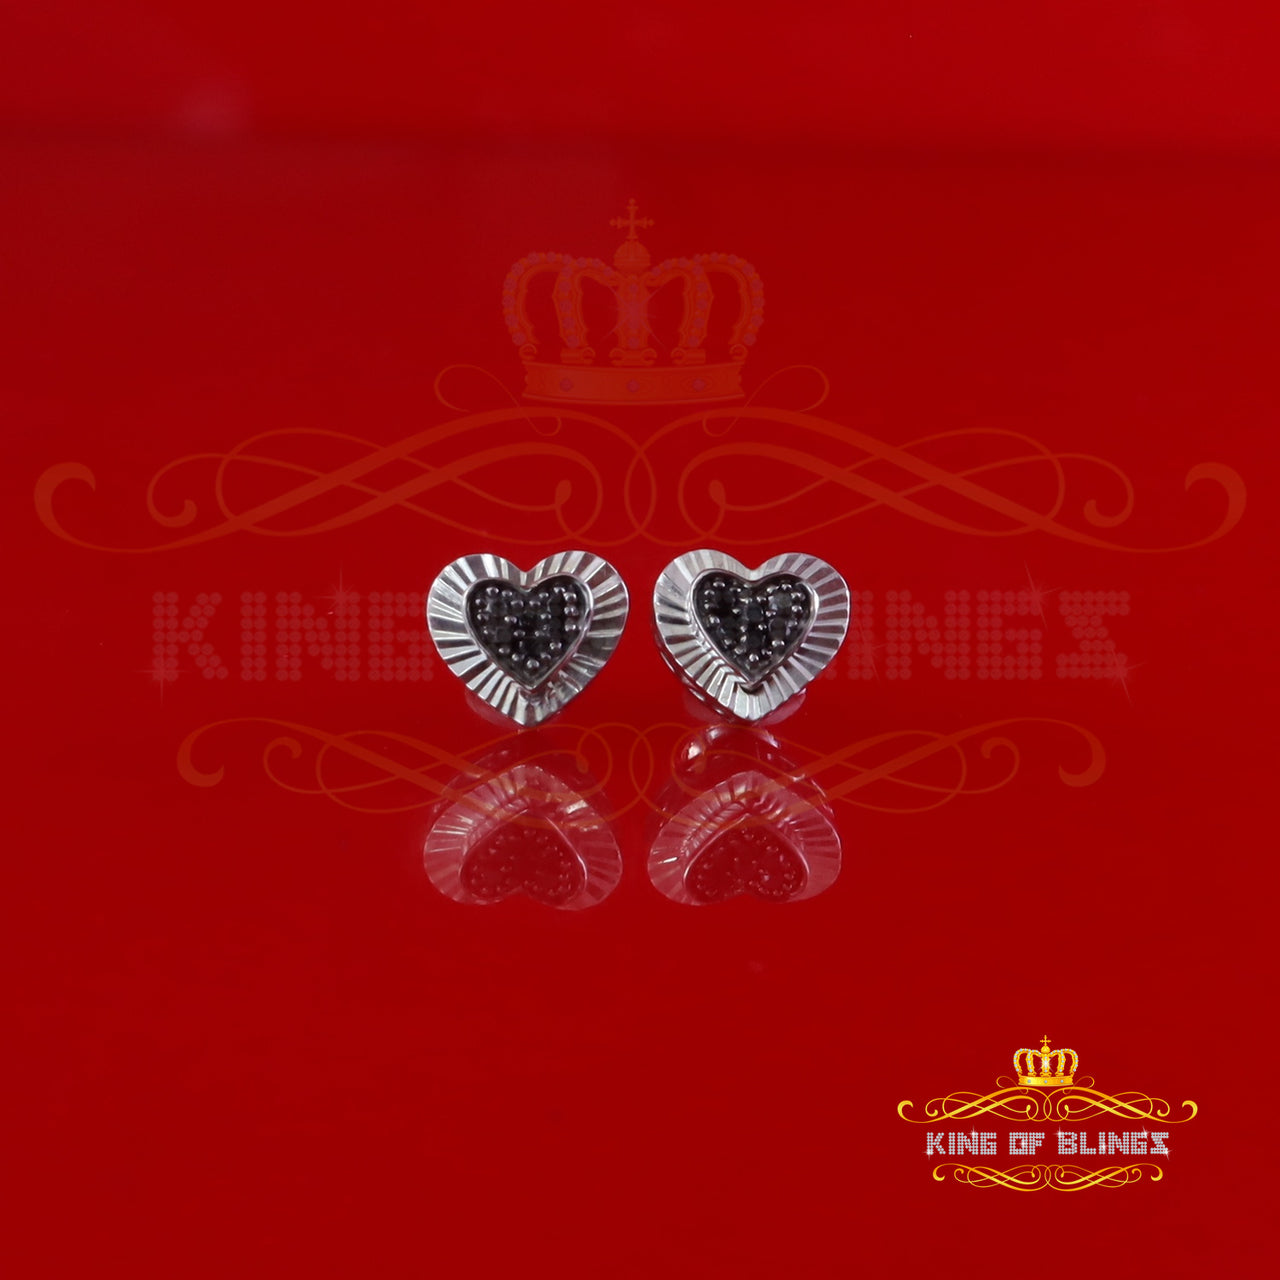 King Of Bling's Heart 925 White Silver 0.12ct Black Diamond Women's /Men's Fashion Earrings KING OF BLINGS